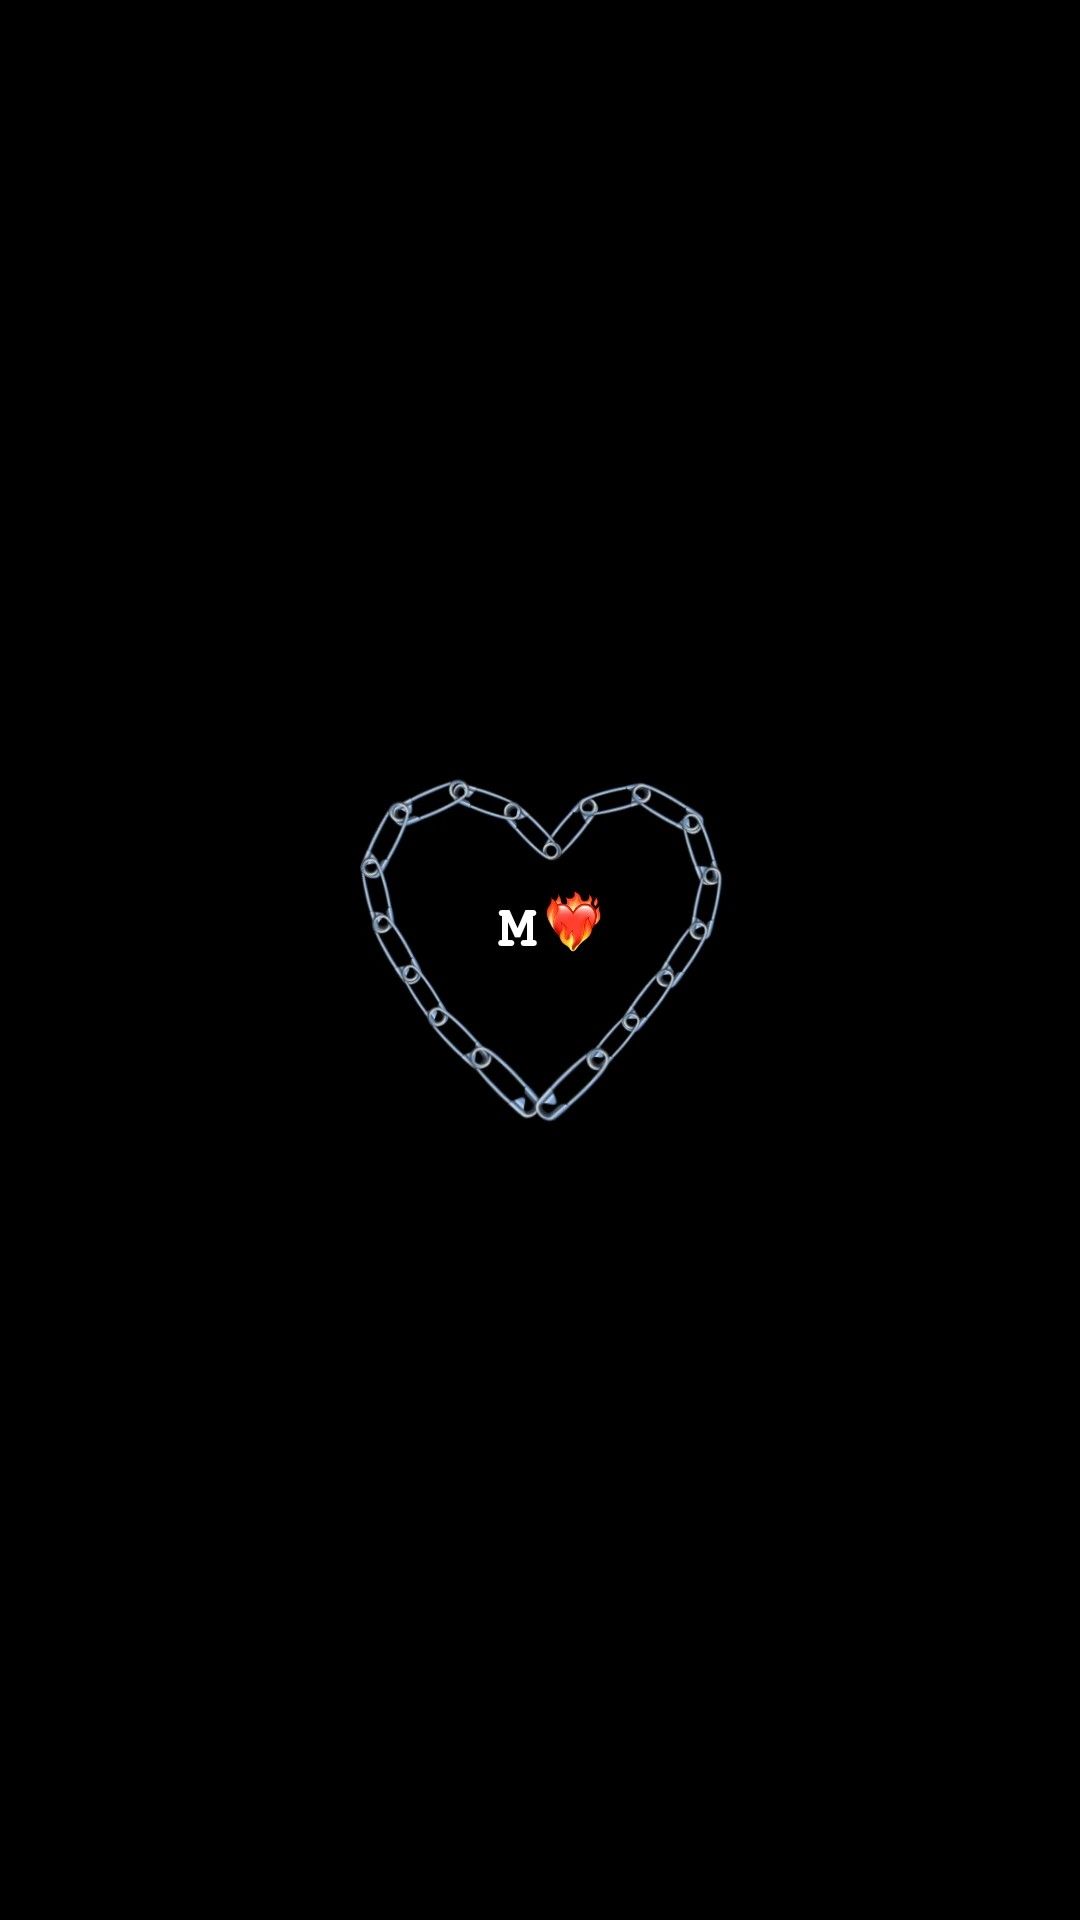 Đắm mình trong hình nền đen trái tim đỏ mê hoặc và đầy lôi cuốn! Với đường viền trắng nổi bật, hình nền này chứa đựng nhiều thông điệp ý nghĩa khác nhau. Hãy để mình miễn phí tưởng tượng và suy ngẫm về hình ảnh này nhé.